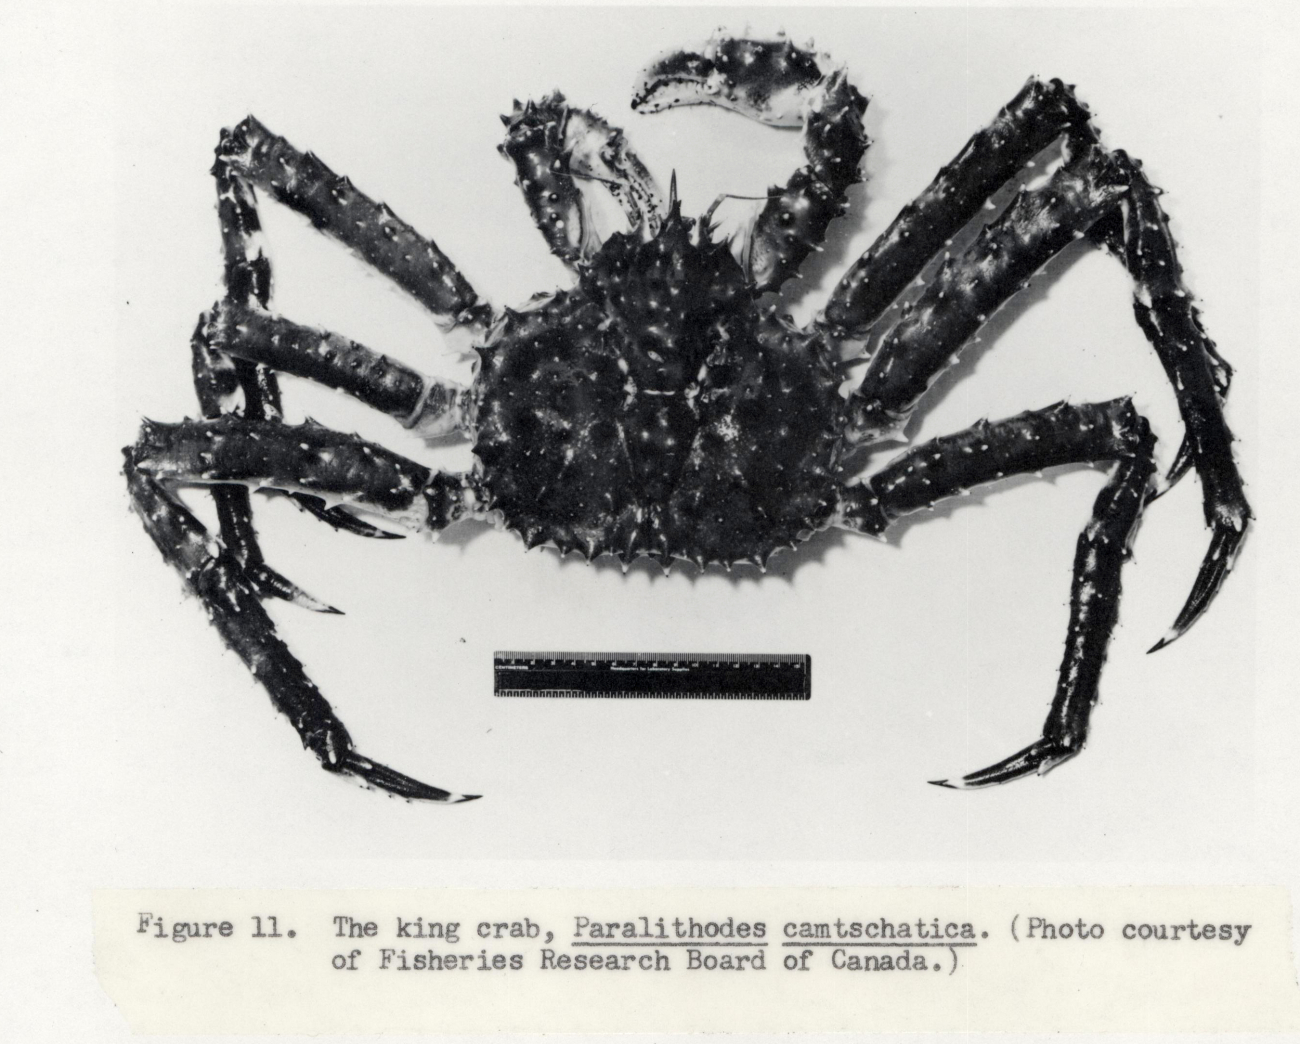 The king crab (Paralithodes camschatica)